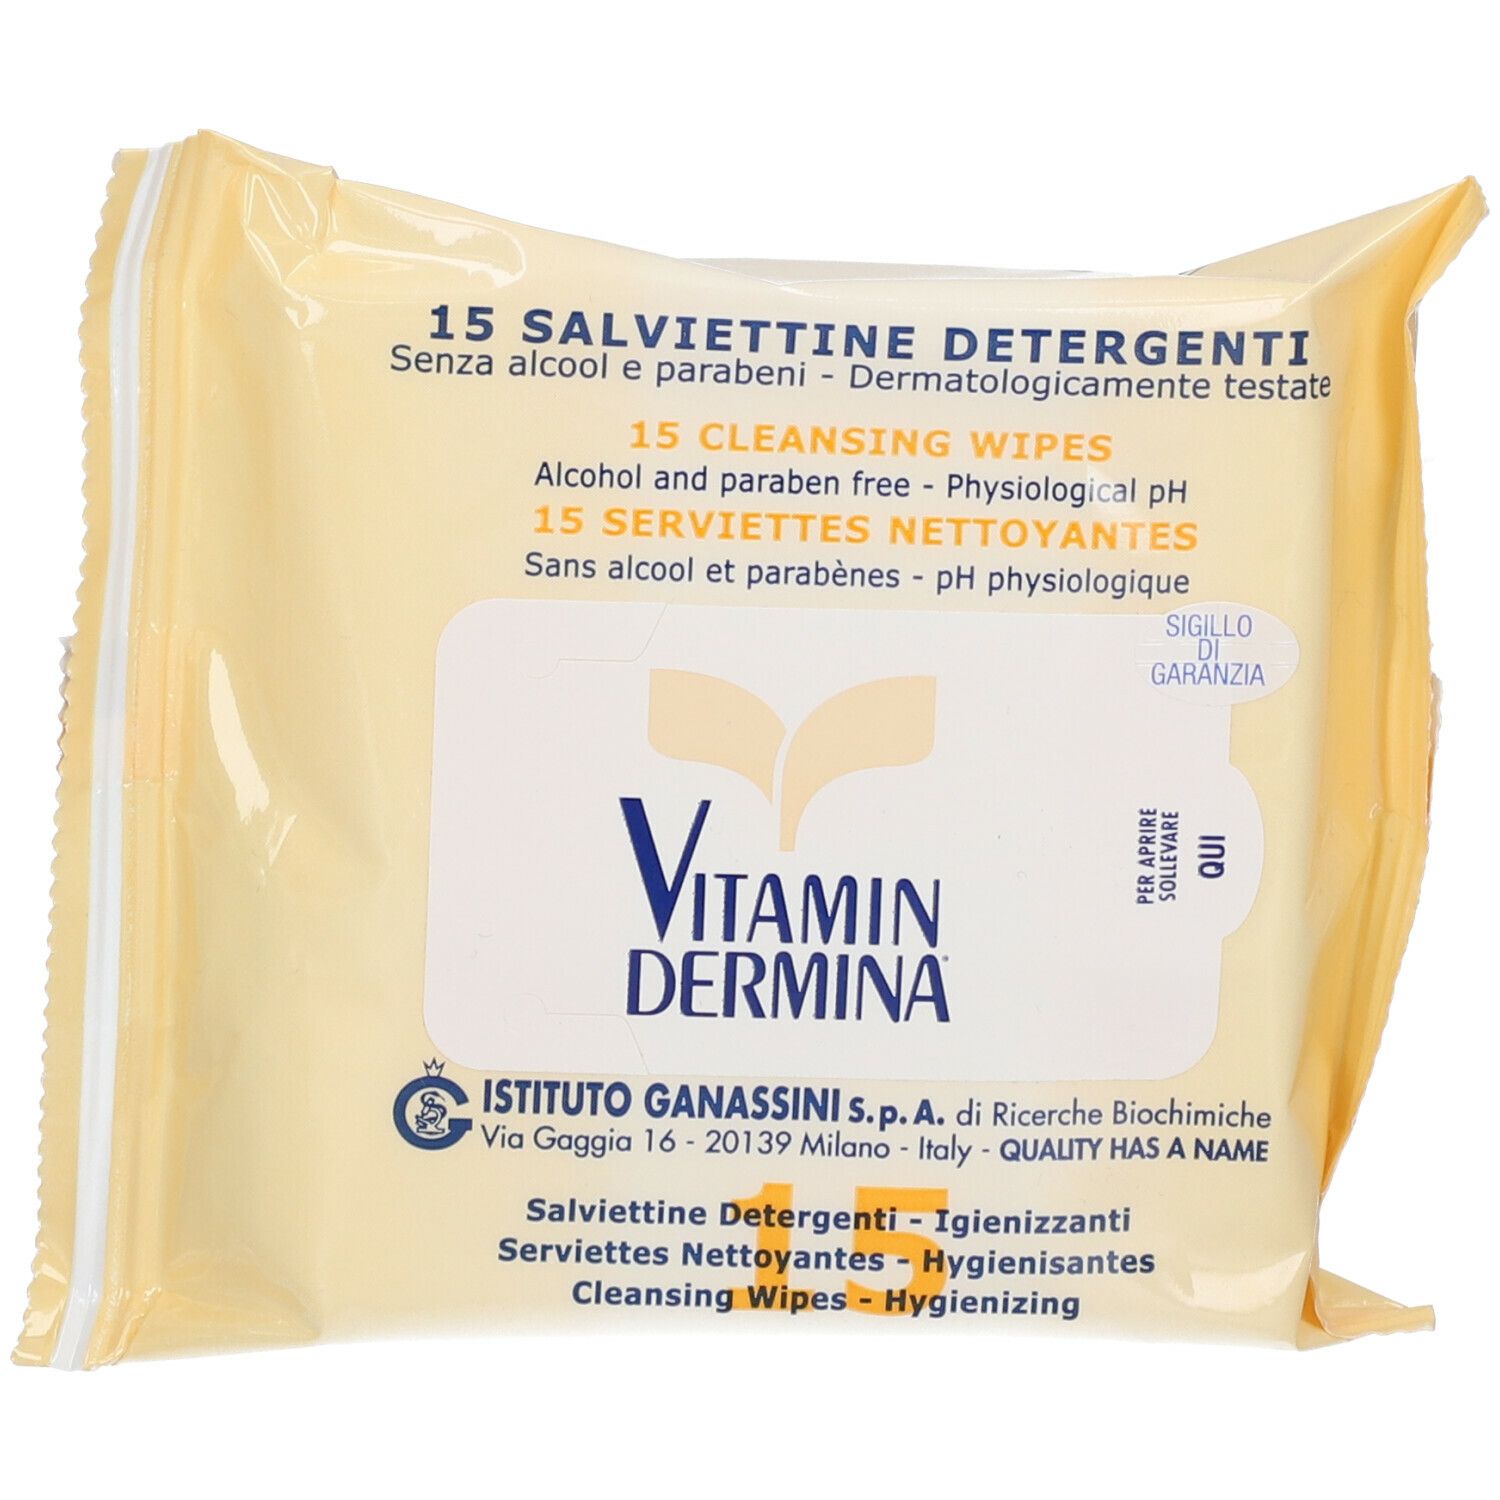 Vitamin Dermina® 15 Salviettine Detergenti